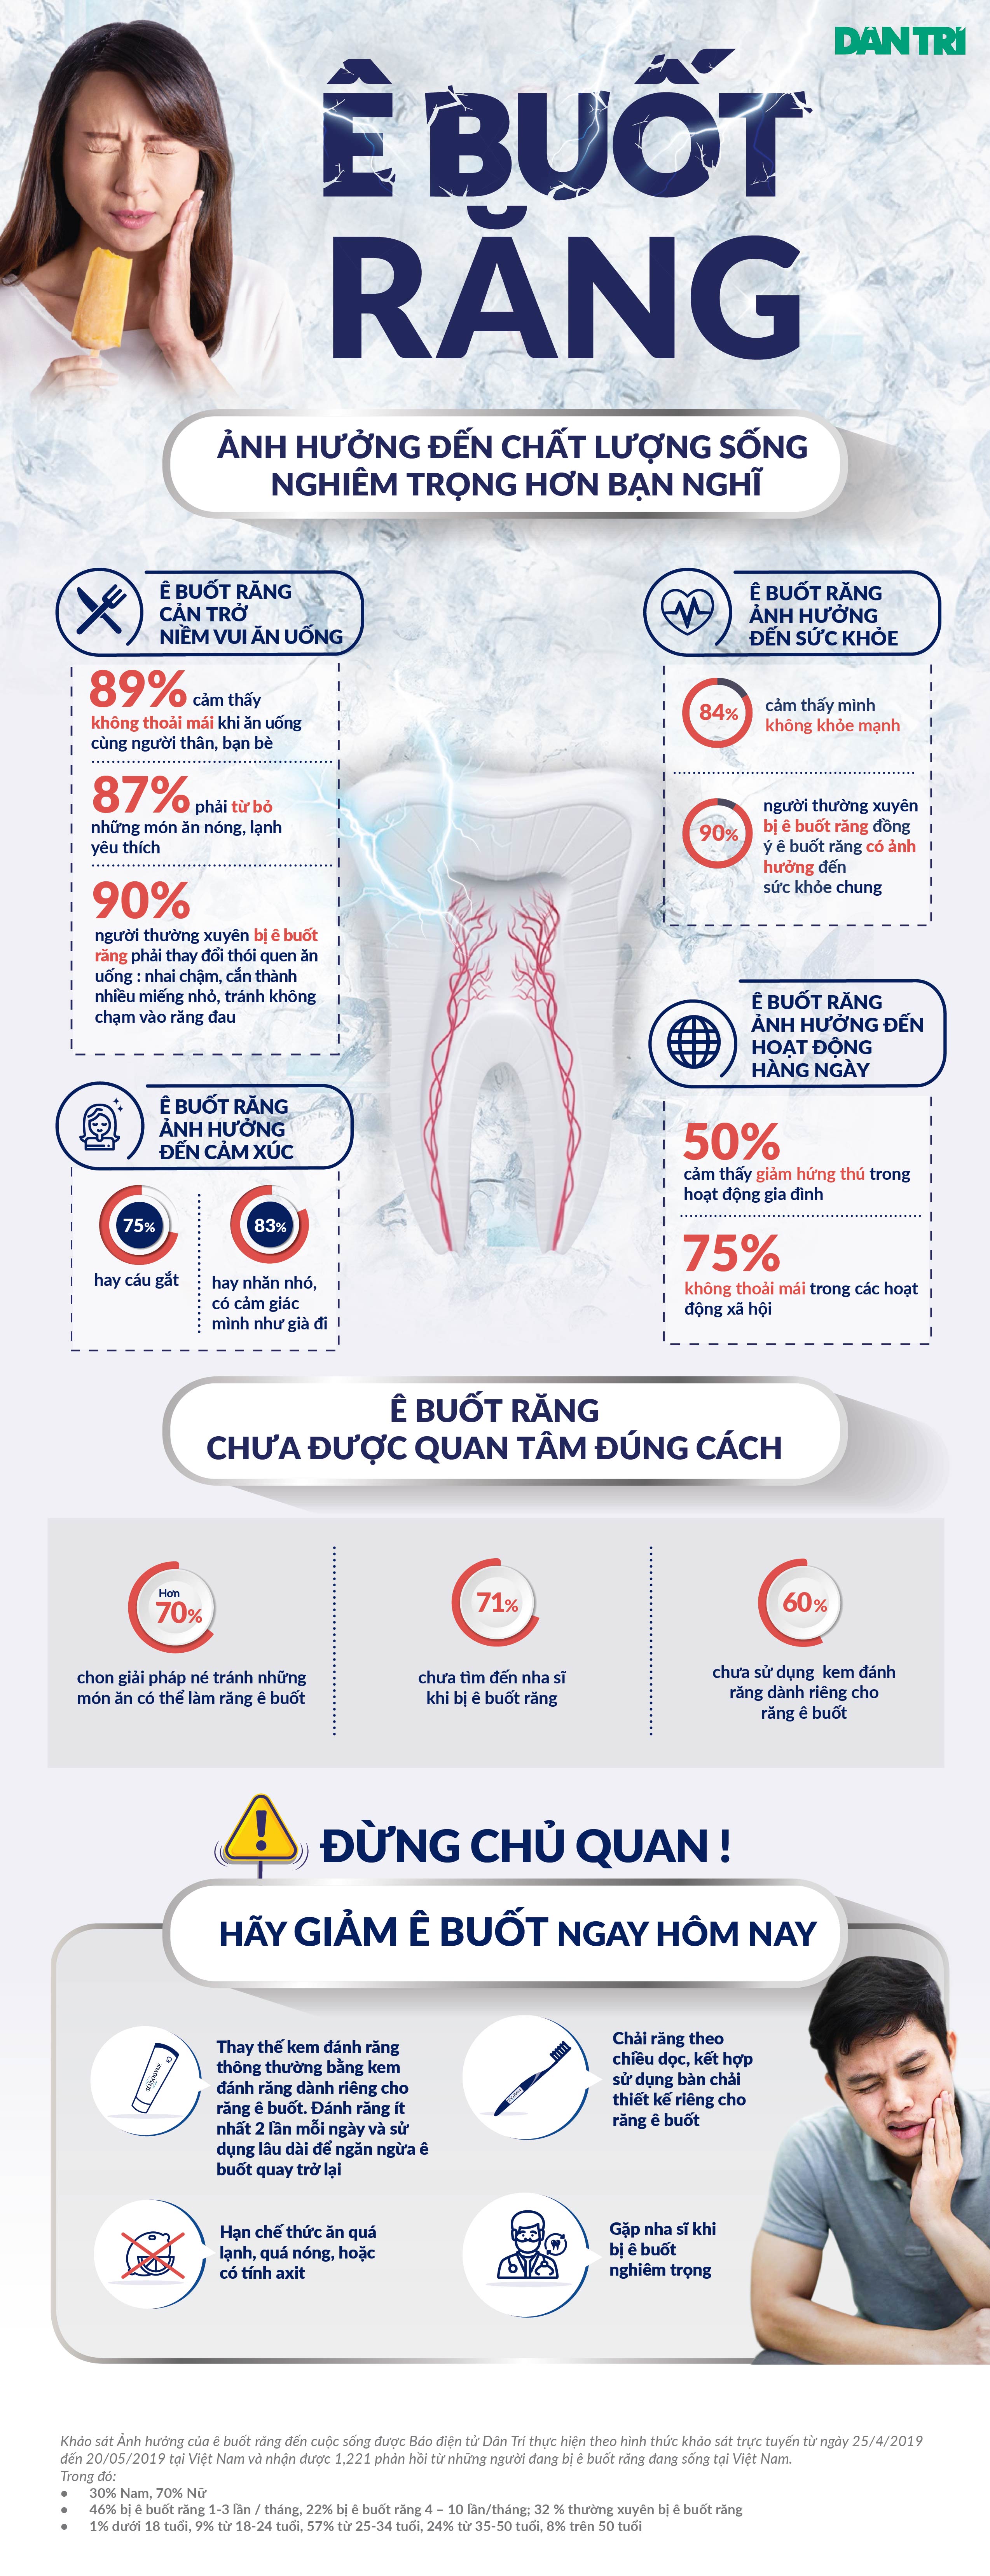 90% người ê buốt răng bị ảnh hưởng đến chất lượng sống